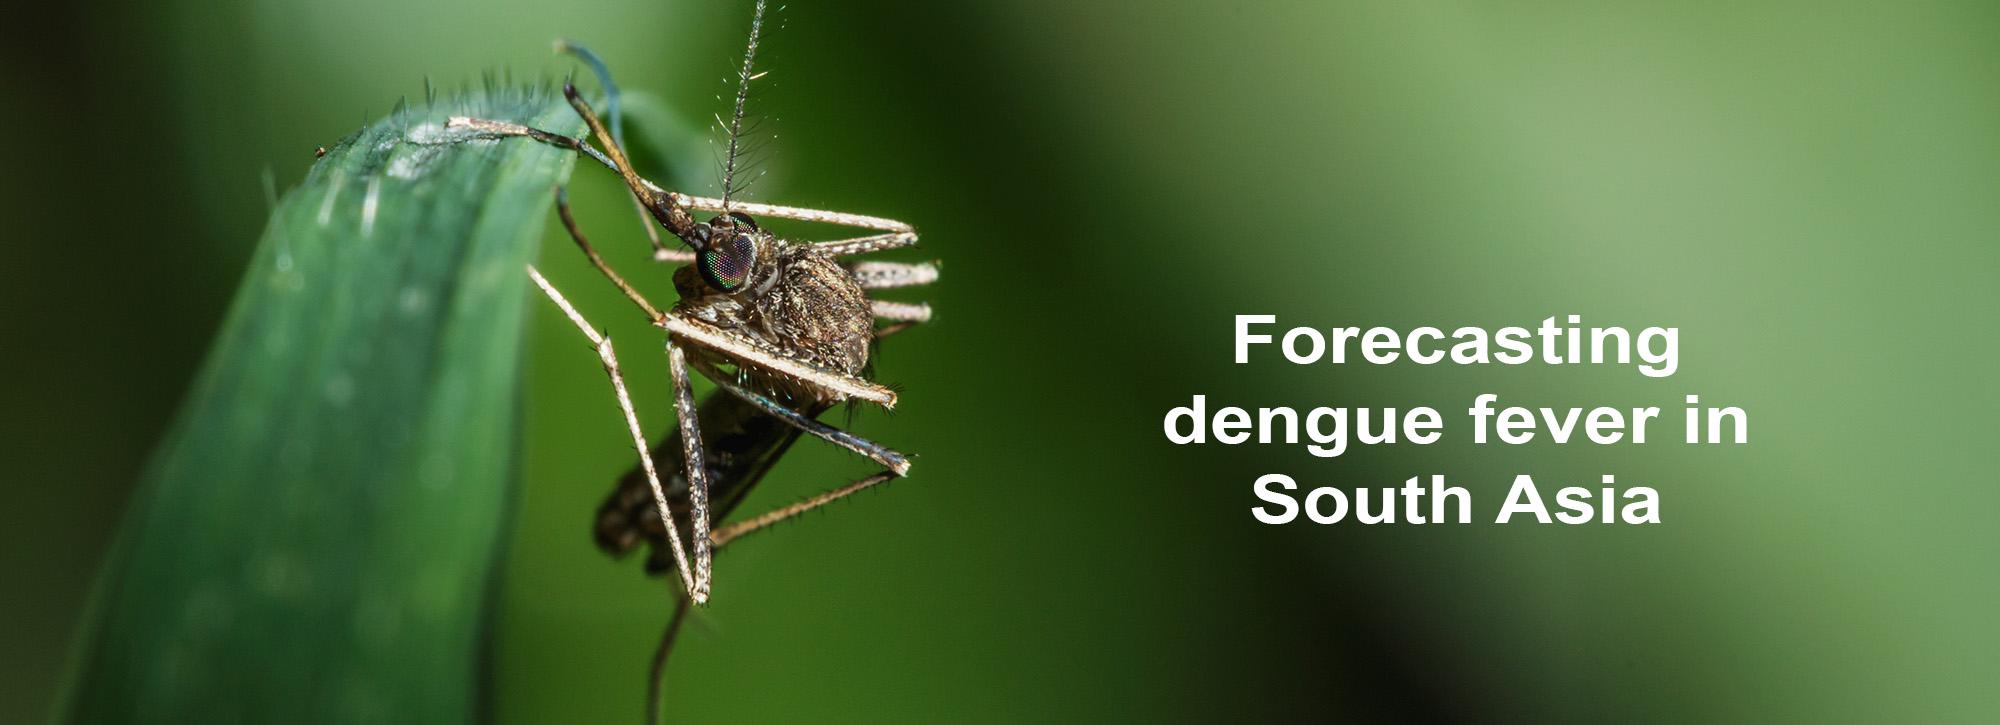 Forecasting dengue fever in South Asia